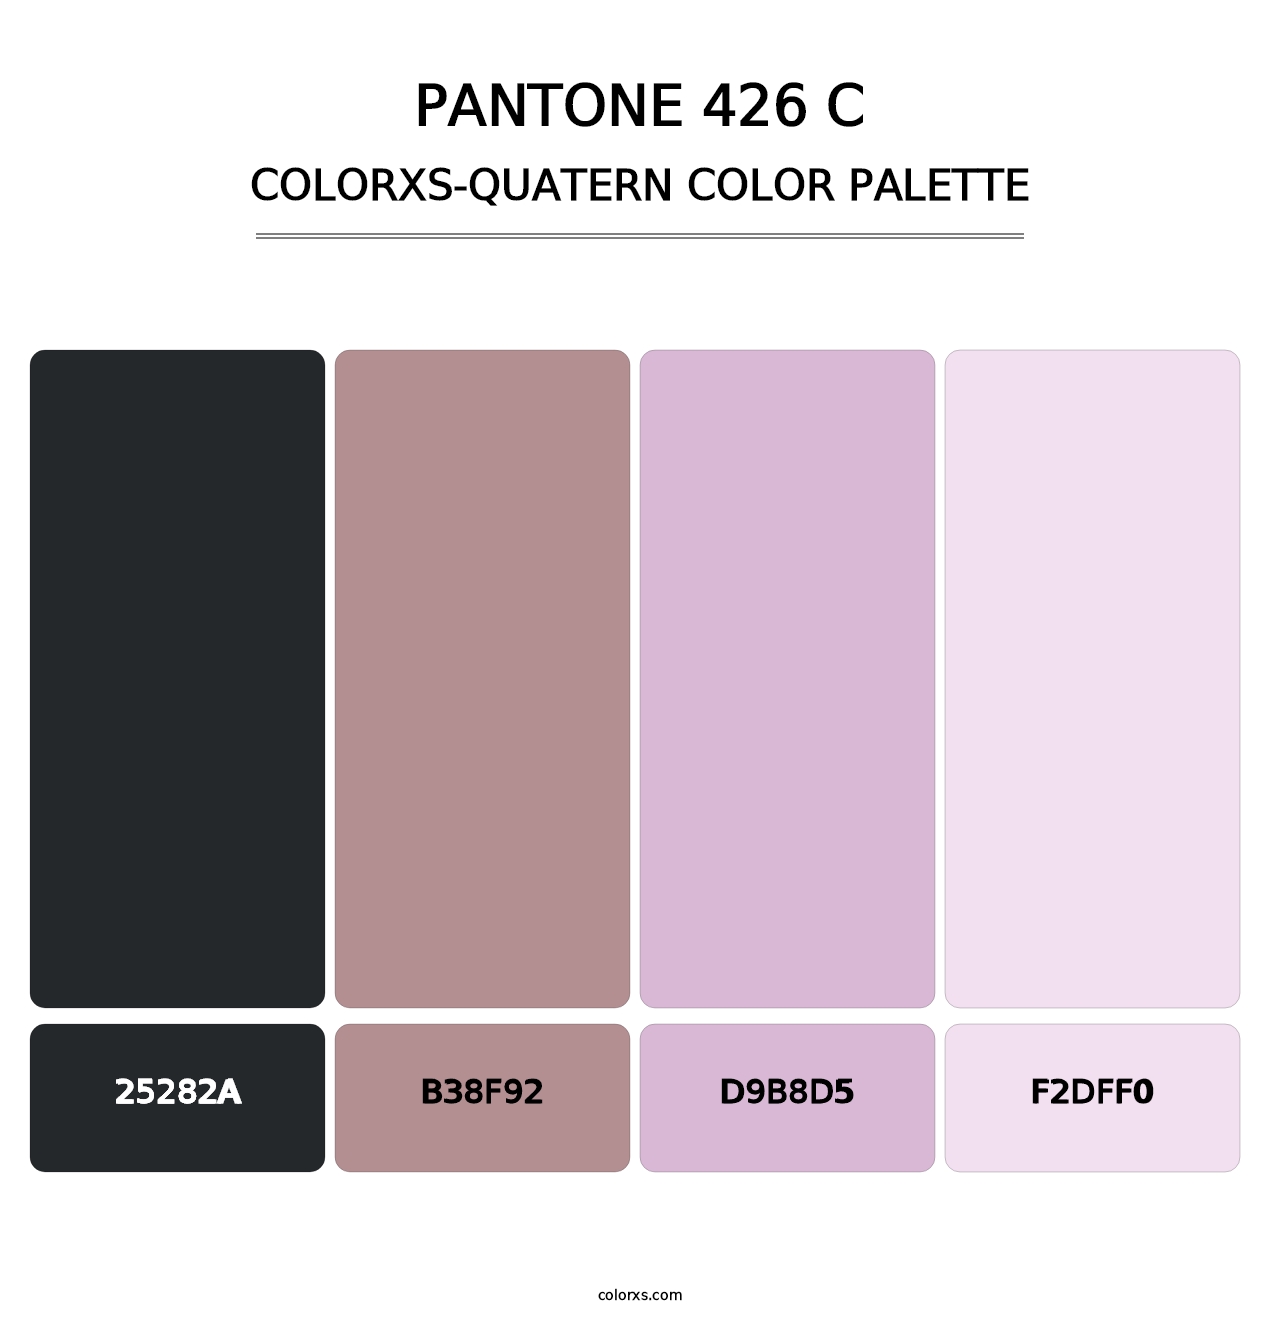 PANTONE 426 C - Colorxs Quatern Palette